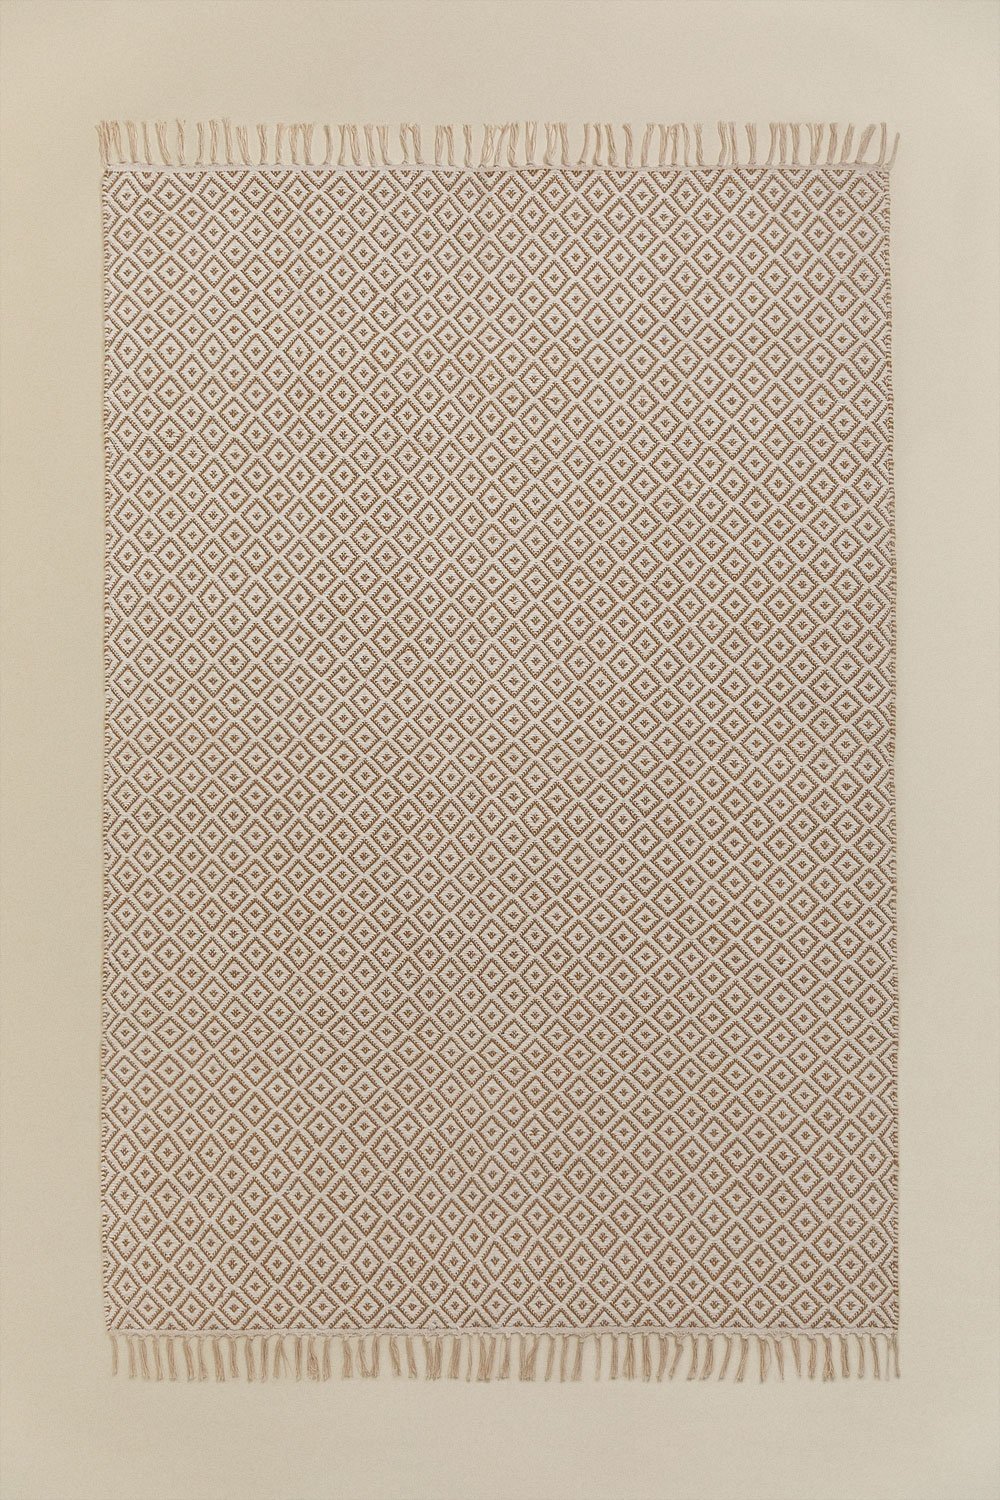 Tappeto in Cotone e Juta (175x122 cm) Durat, immagine della galleria 1